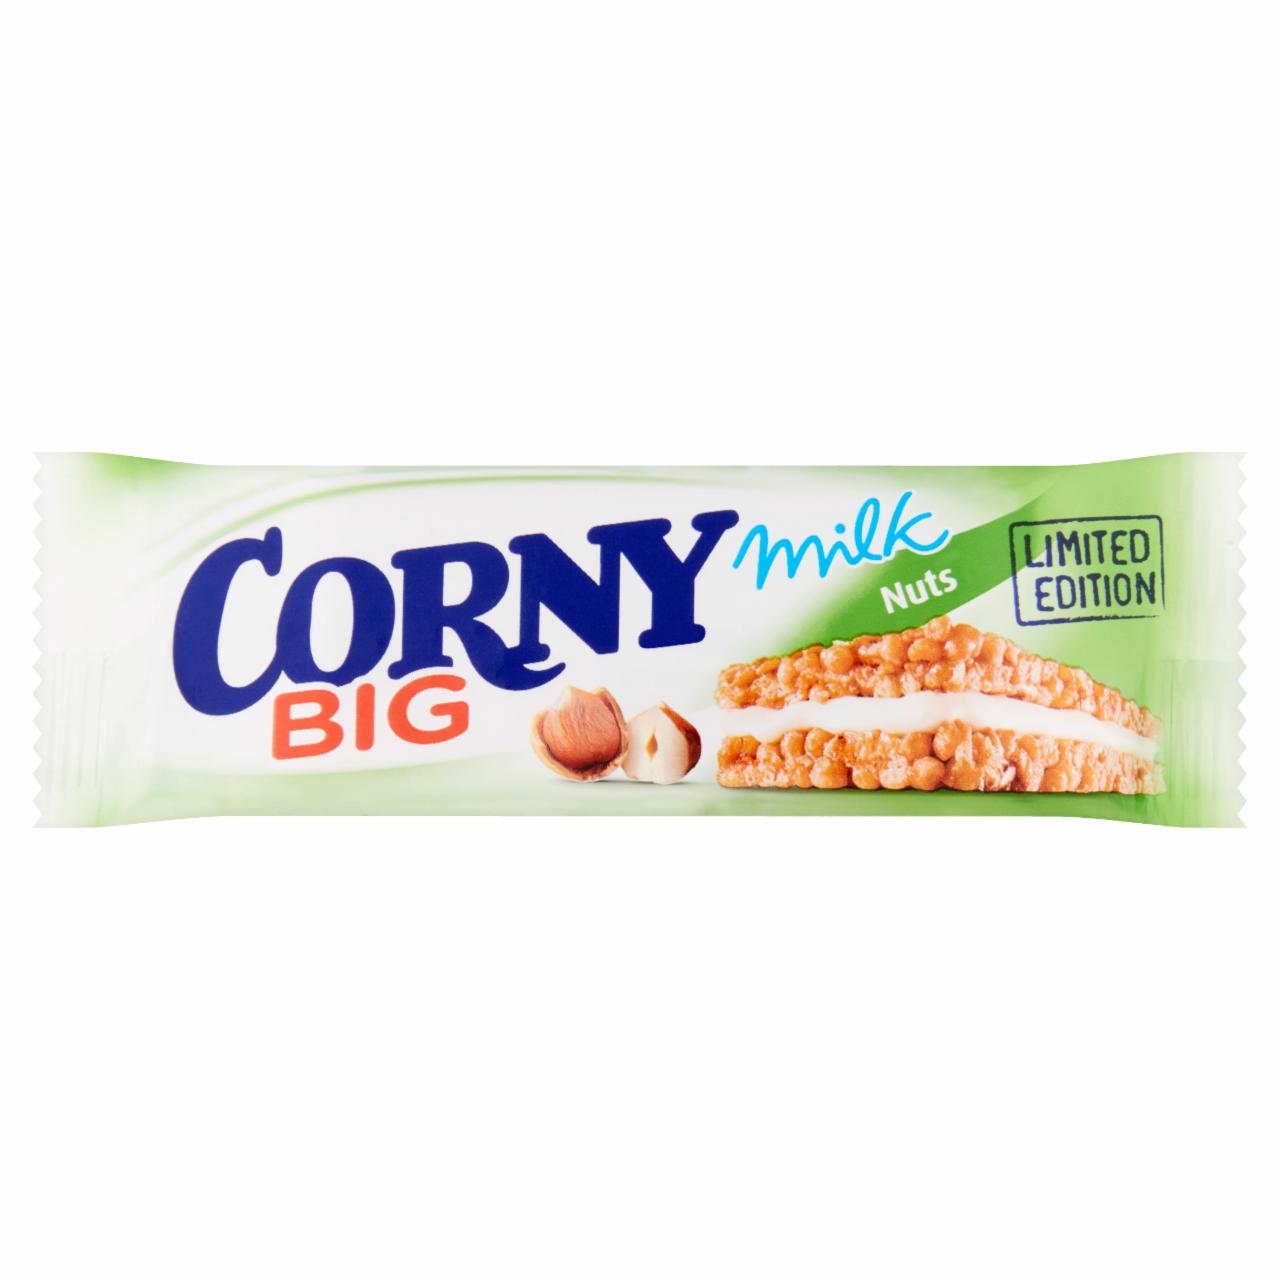 Képek - Corny Big mogyorós müzliszelet tejkrémmel töltve 40 g